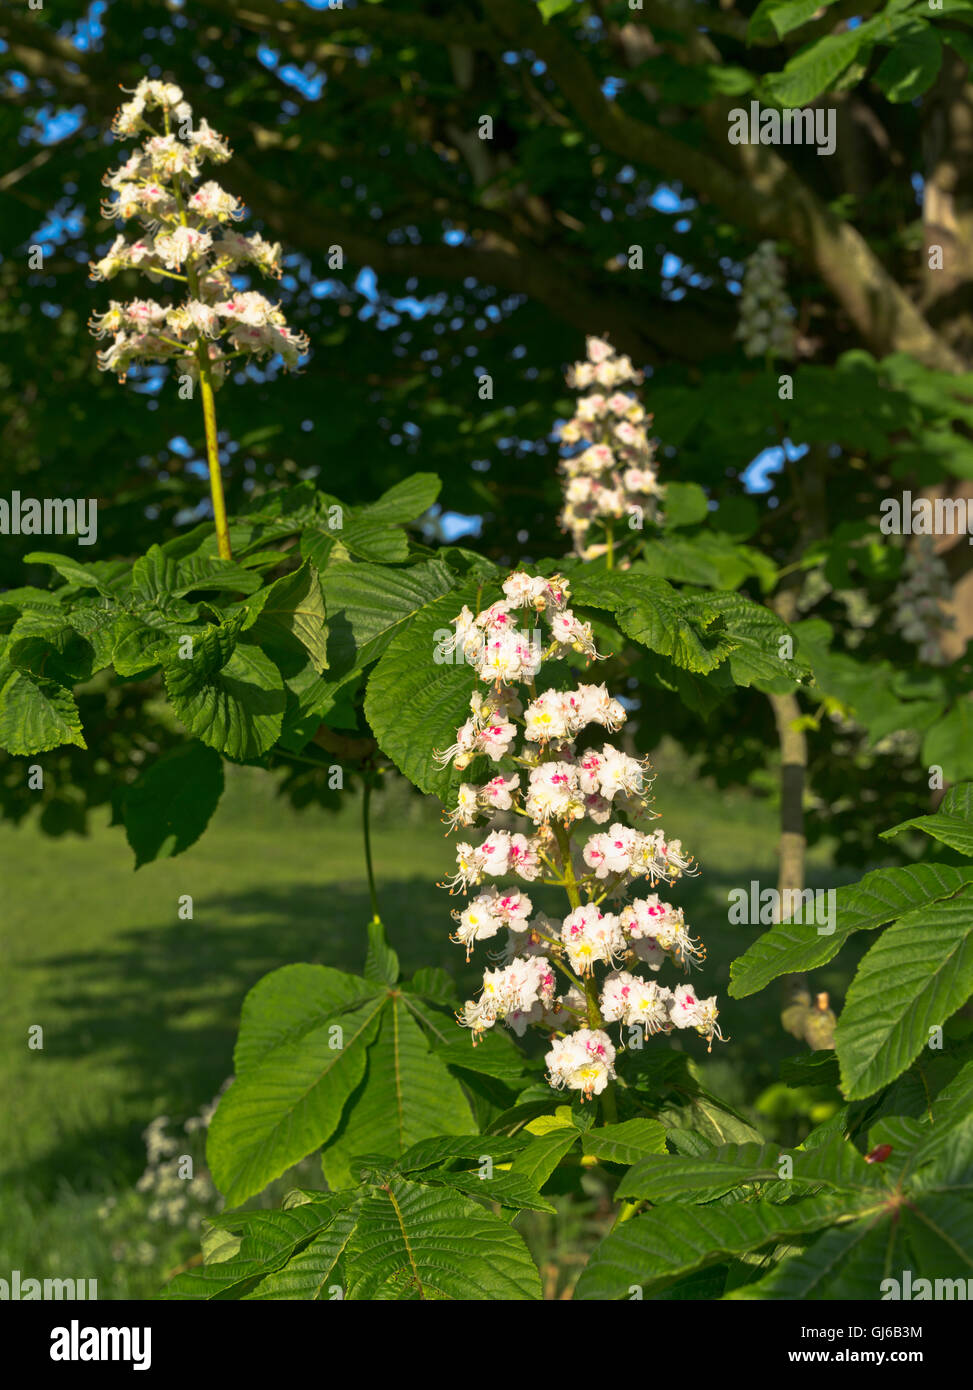 dh Chestnut TREE UK Horse chestnut flower tree flowers branch flowering Stock Photo